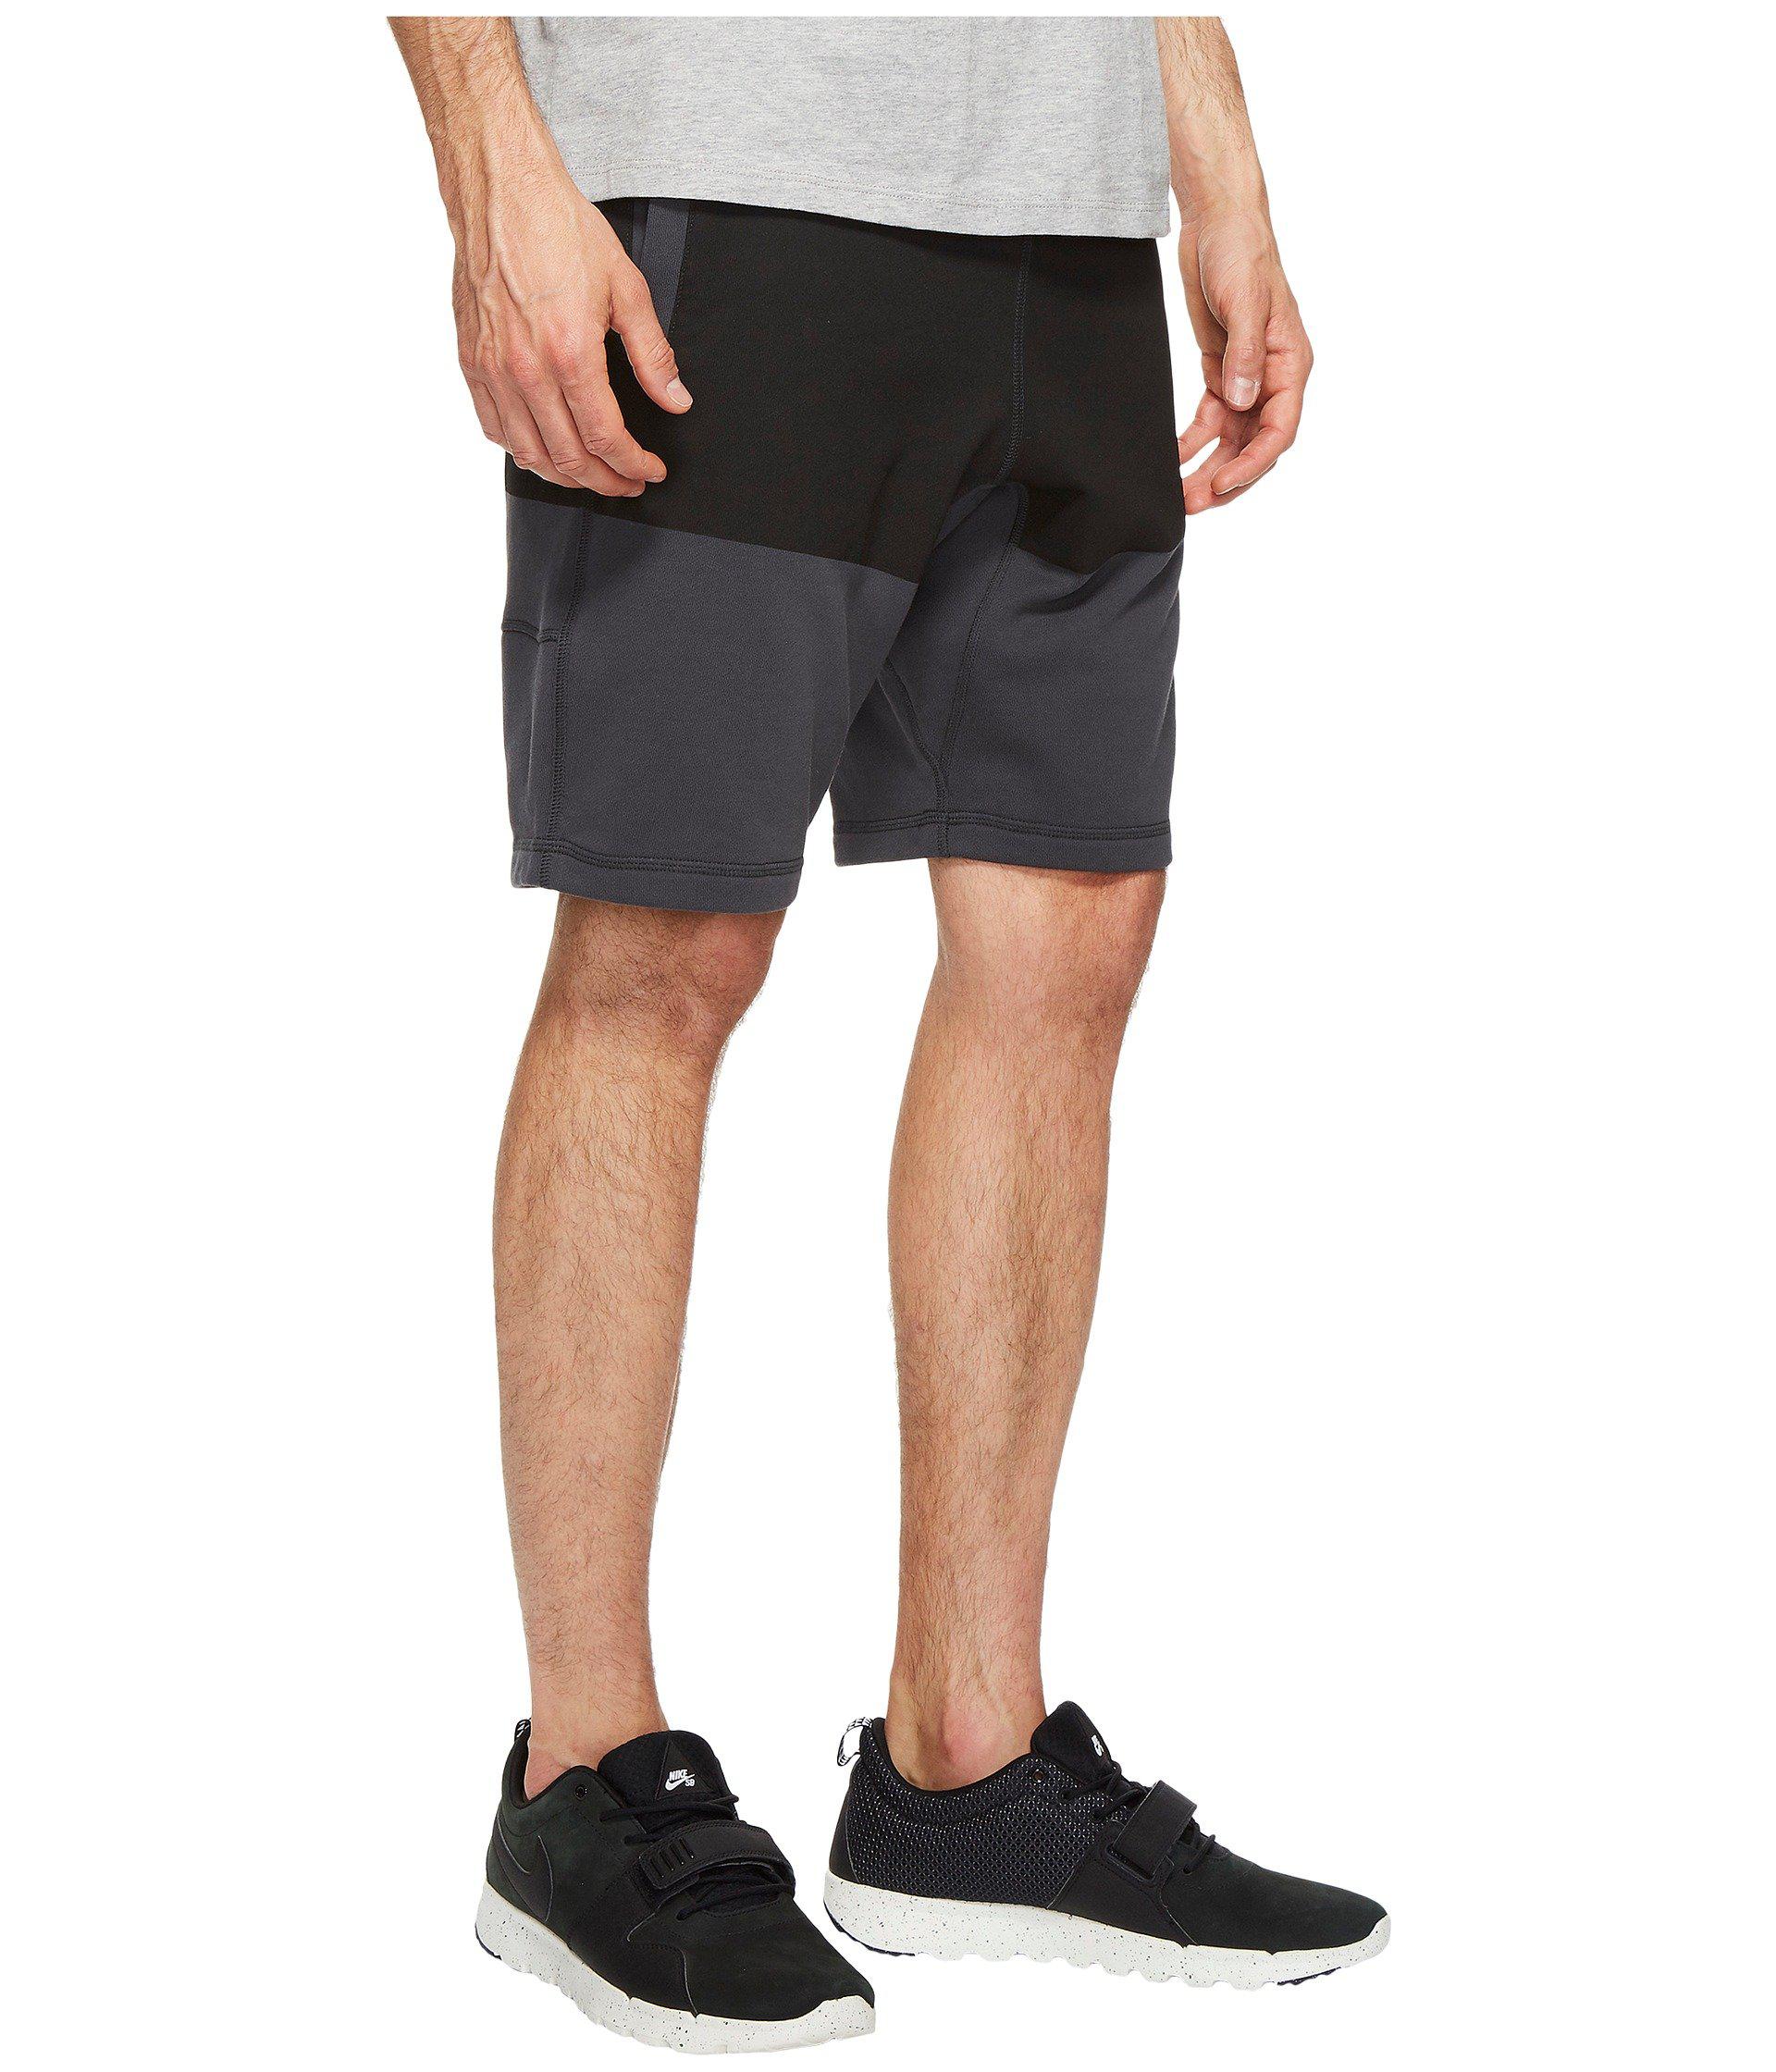 Nike Cotton Sb Everett Shorts Stripe in Anthracite/Black (Black) for Men -  Lyst